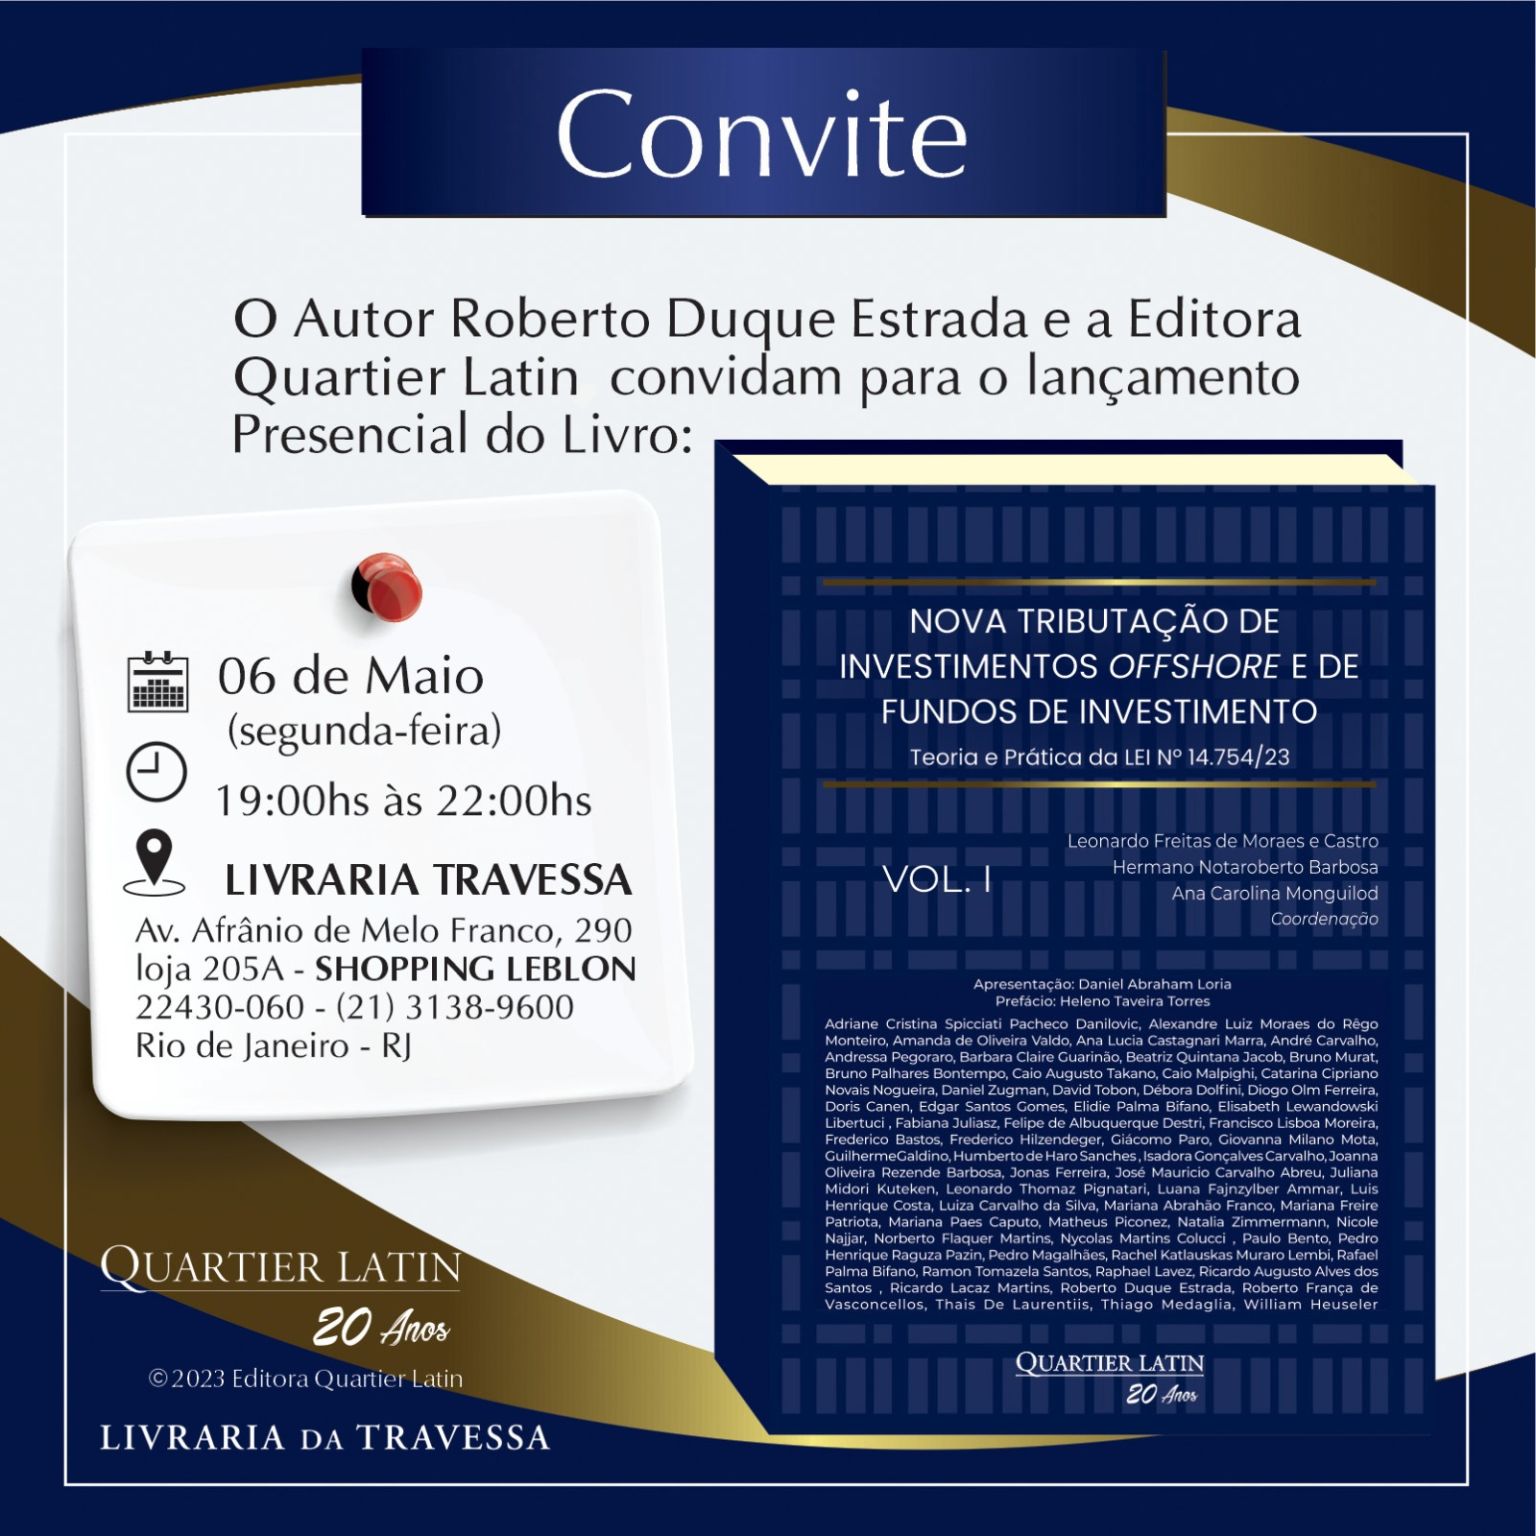 Jonas Ferreira e Roberto Duque Estrada - livro